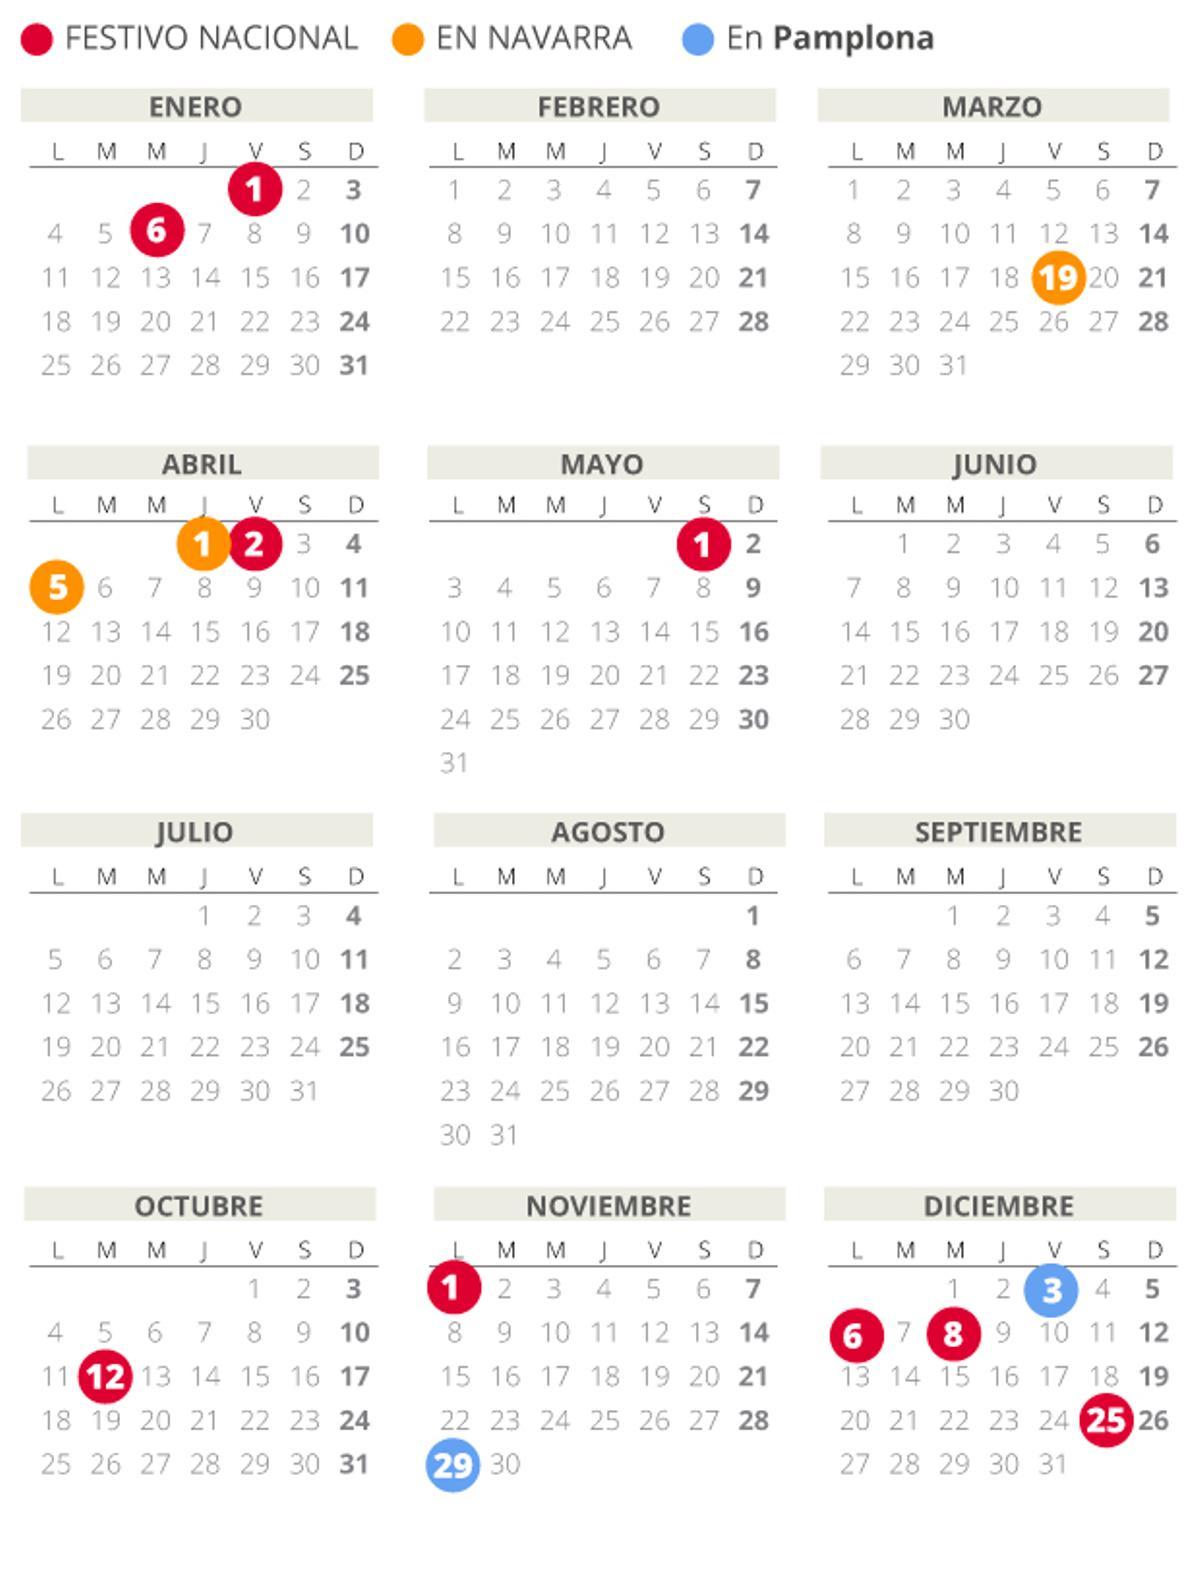 Calendario laboral de Pamplona del 2021.